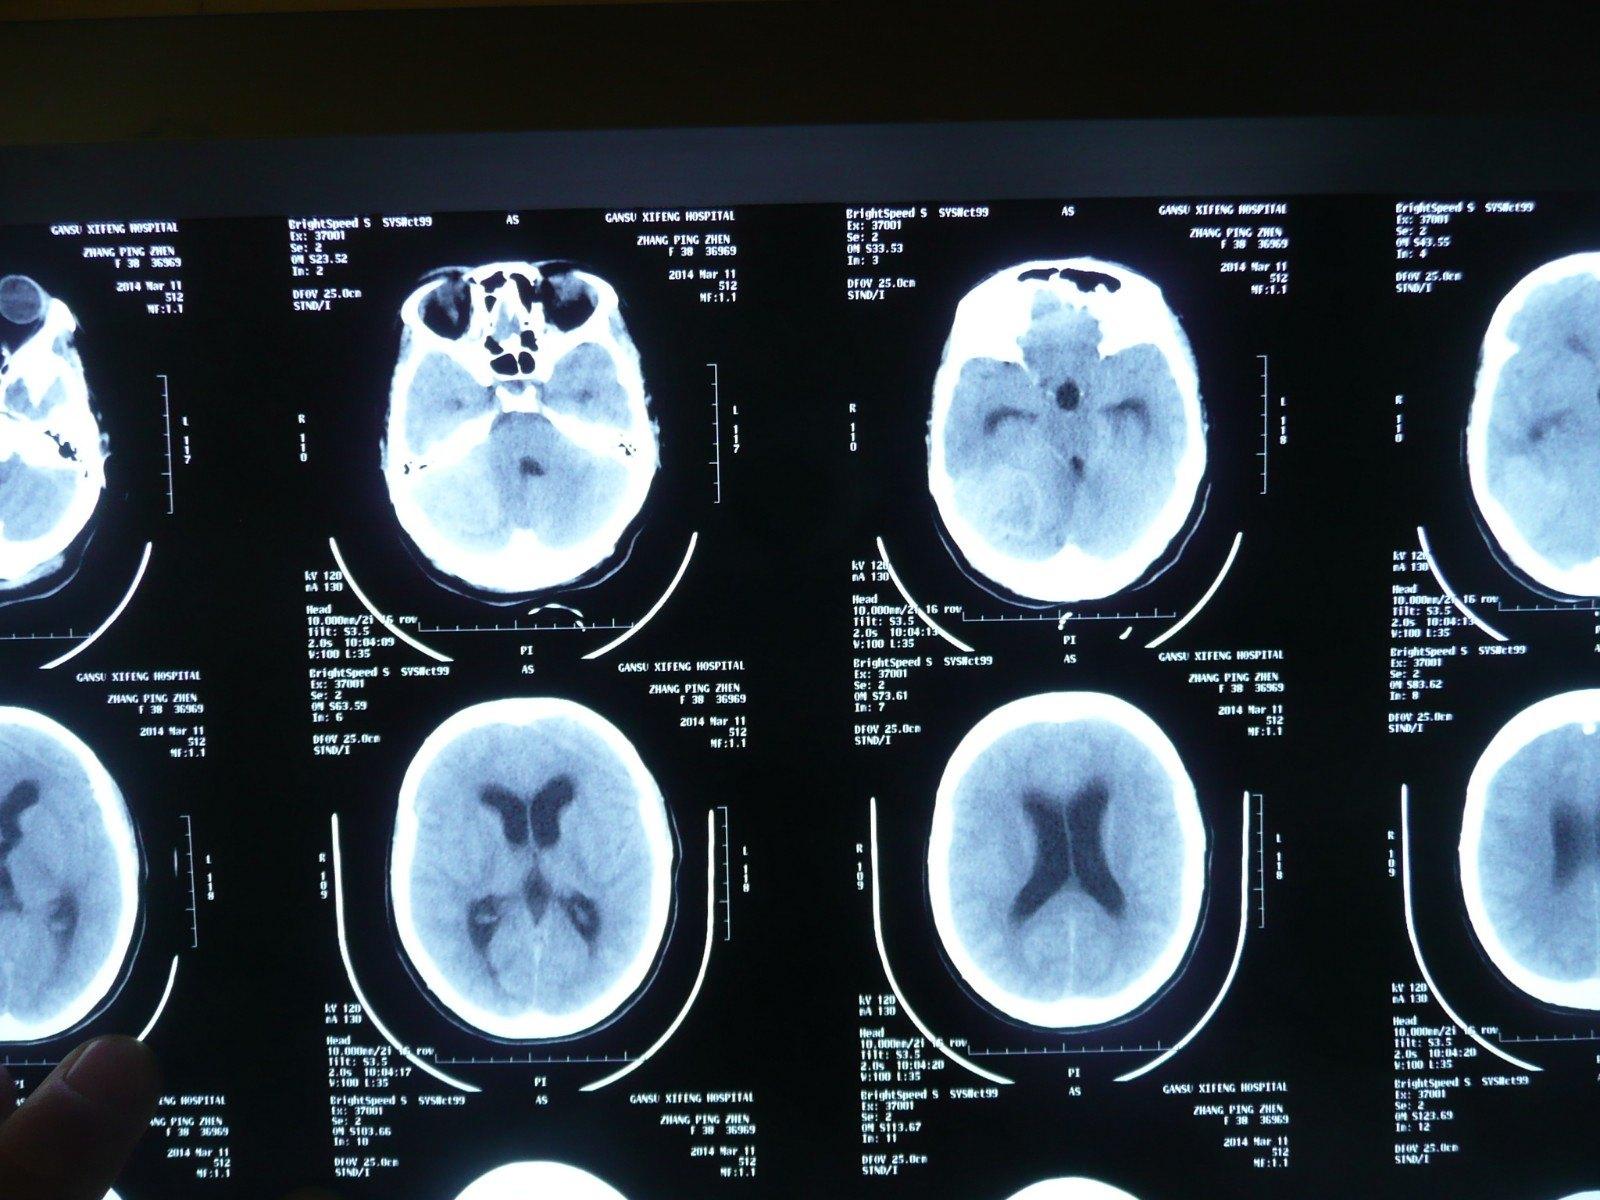 钟书教授专栏丨中枢介入第8期：脑肿瘤术前栓塞及改进 - 脑医汇 - 神外资讯 - 神介资讯